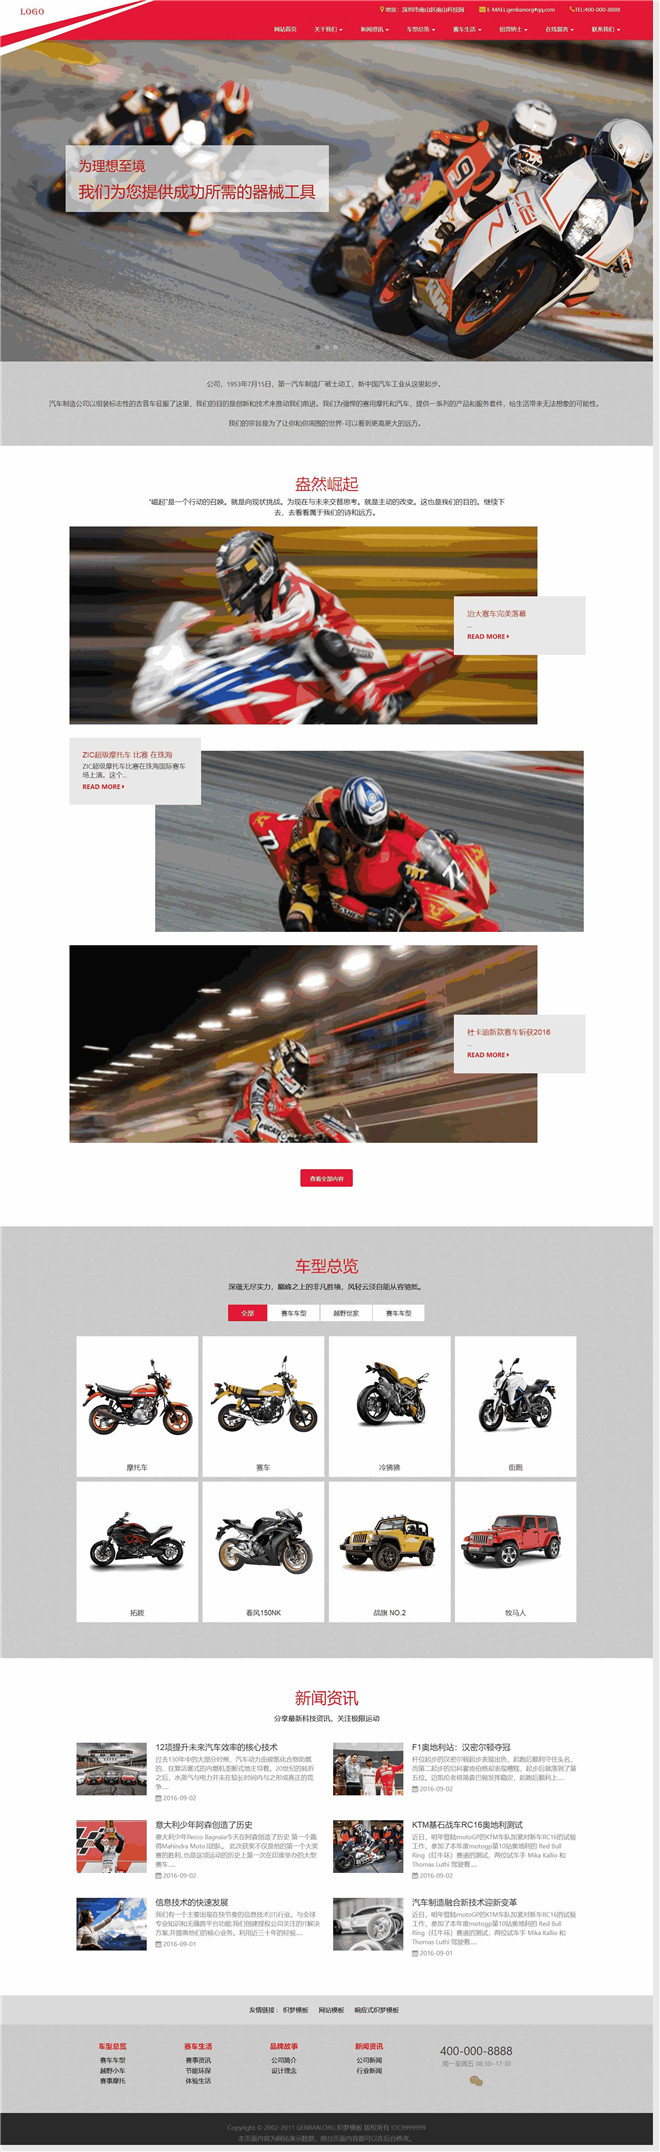 高端赛车摩托车展示类公司网站模板截图